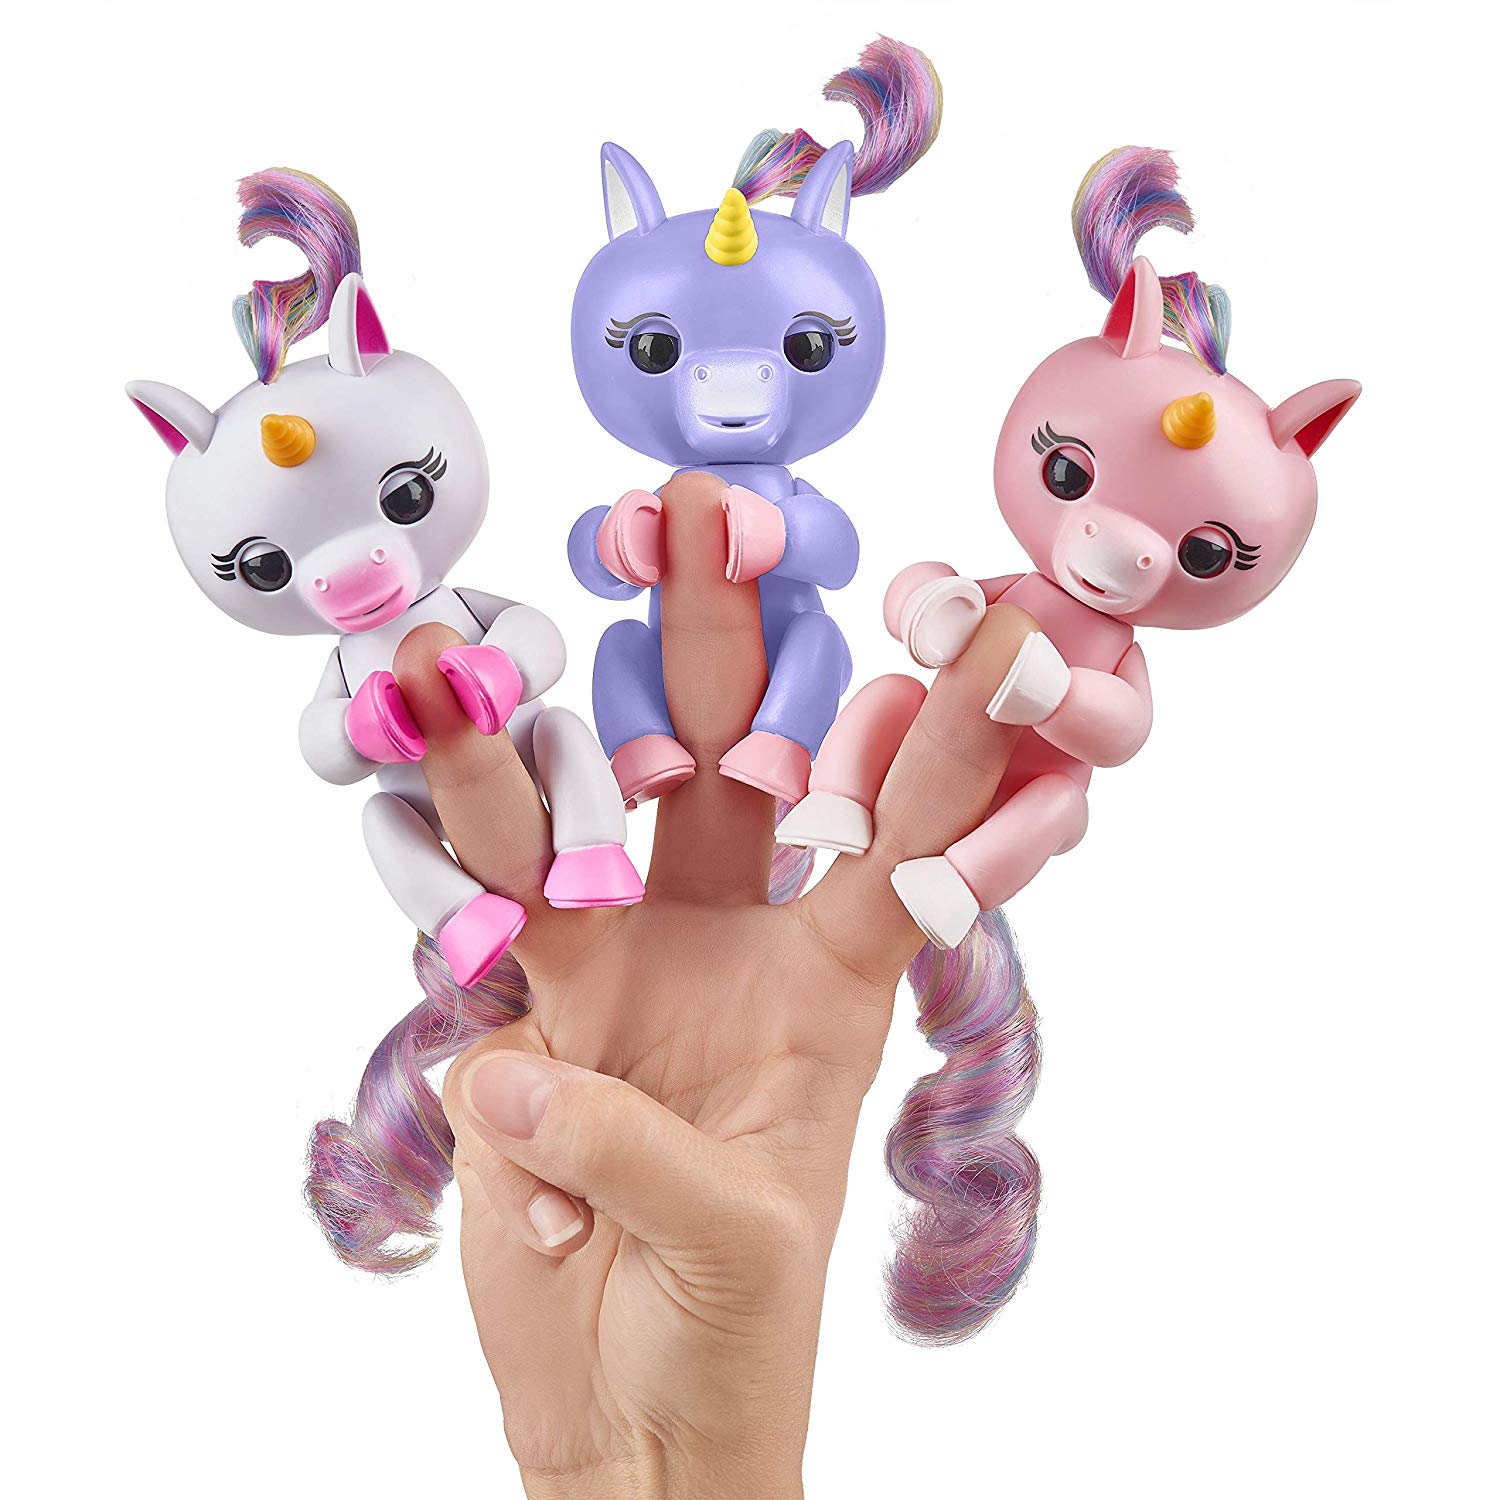 unicorn hugs fingerlings